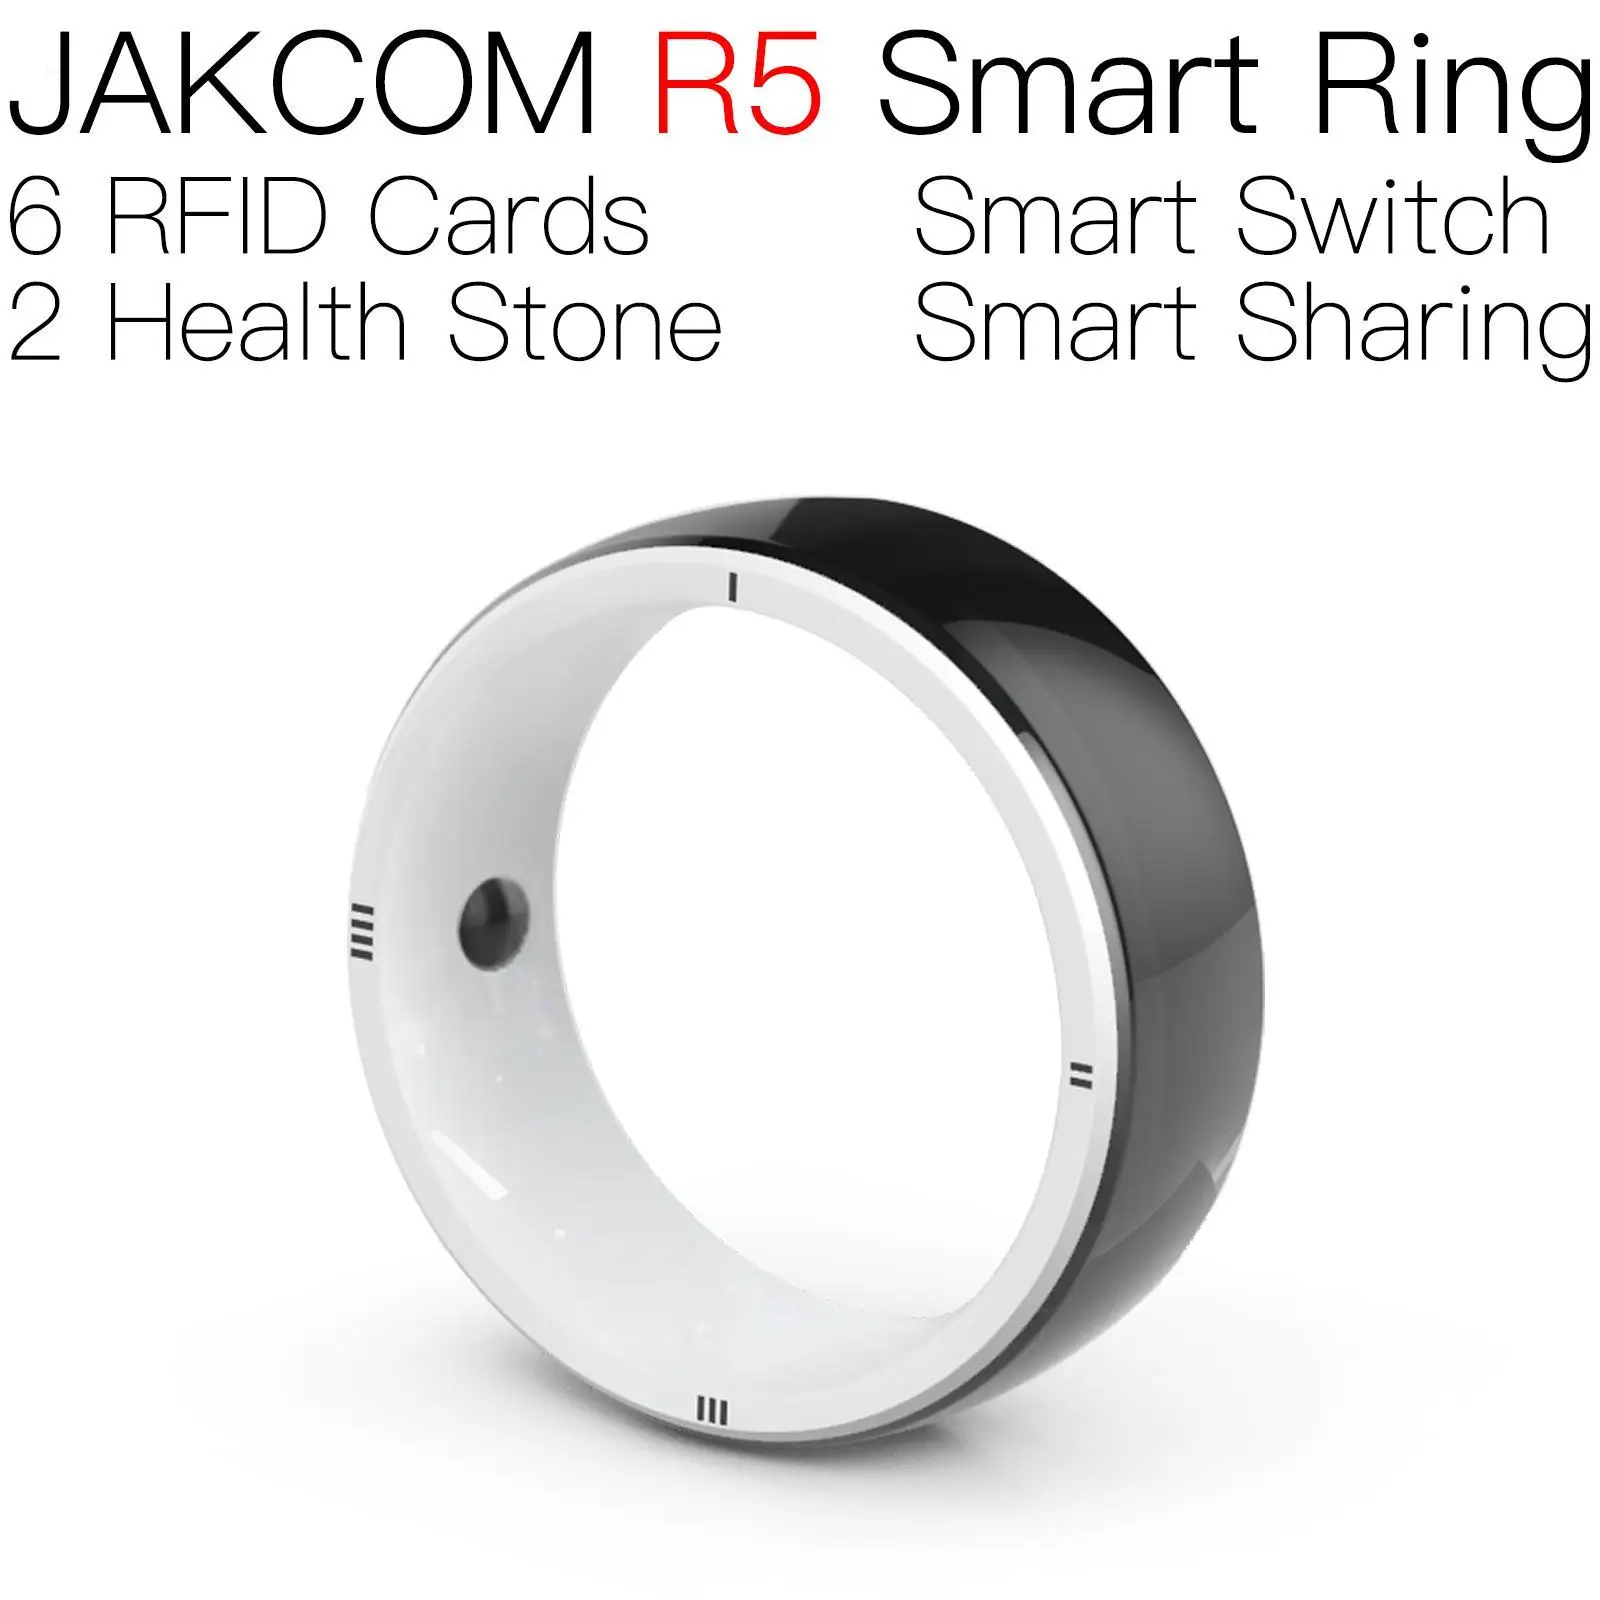 

Умное кольцо JAKCOM R5, лучше, чем умные часы для женщин, Волшебная камера xiaomo, электронные смарт-часы, Мои заказы